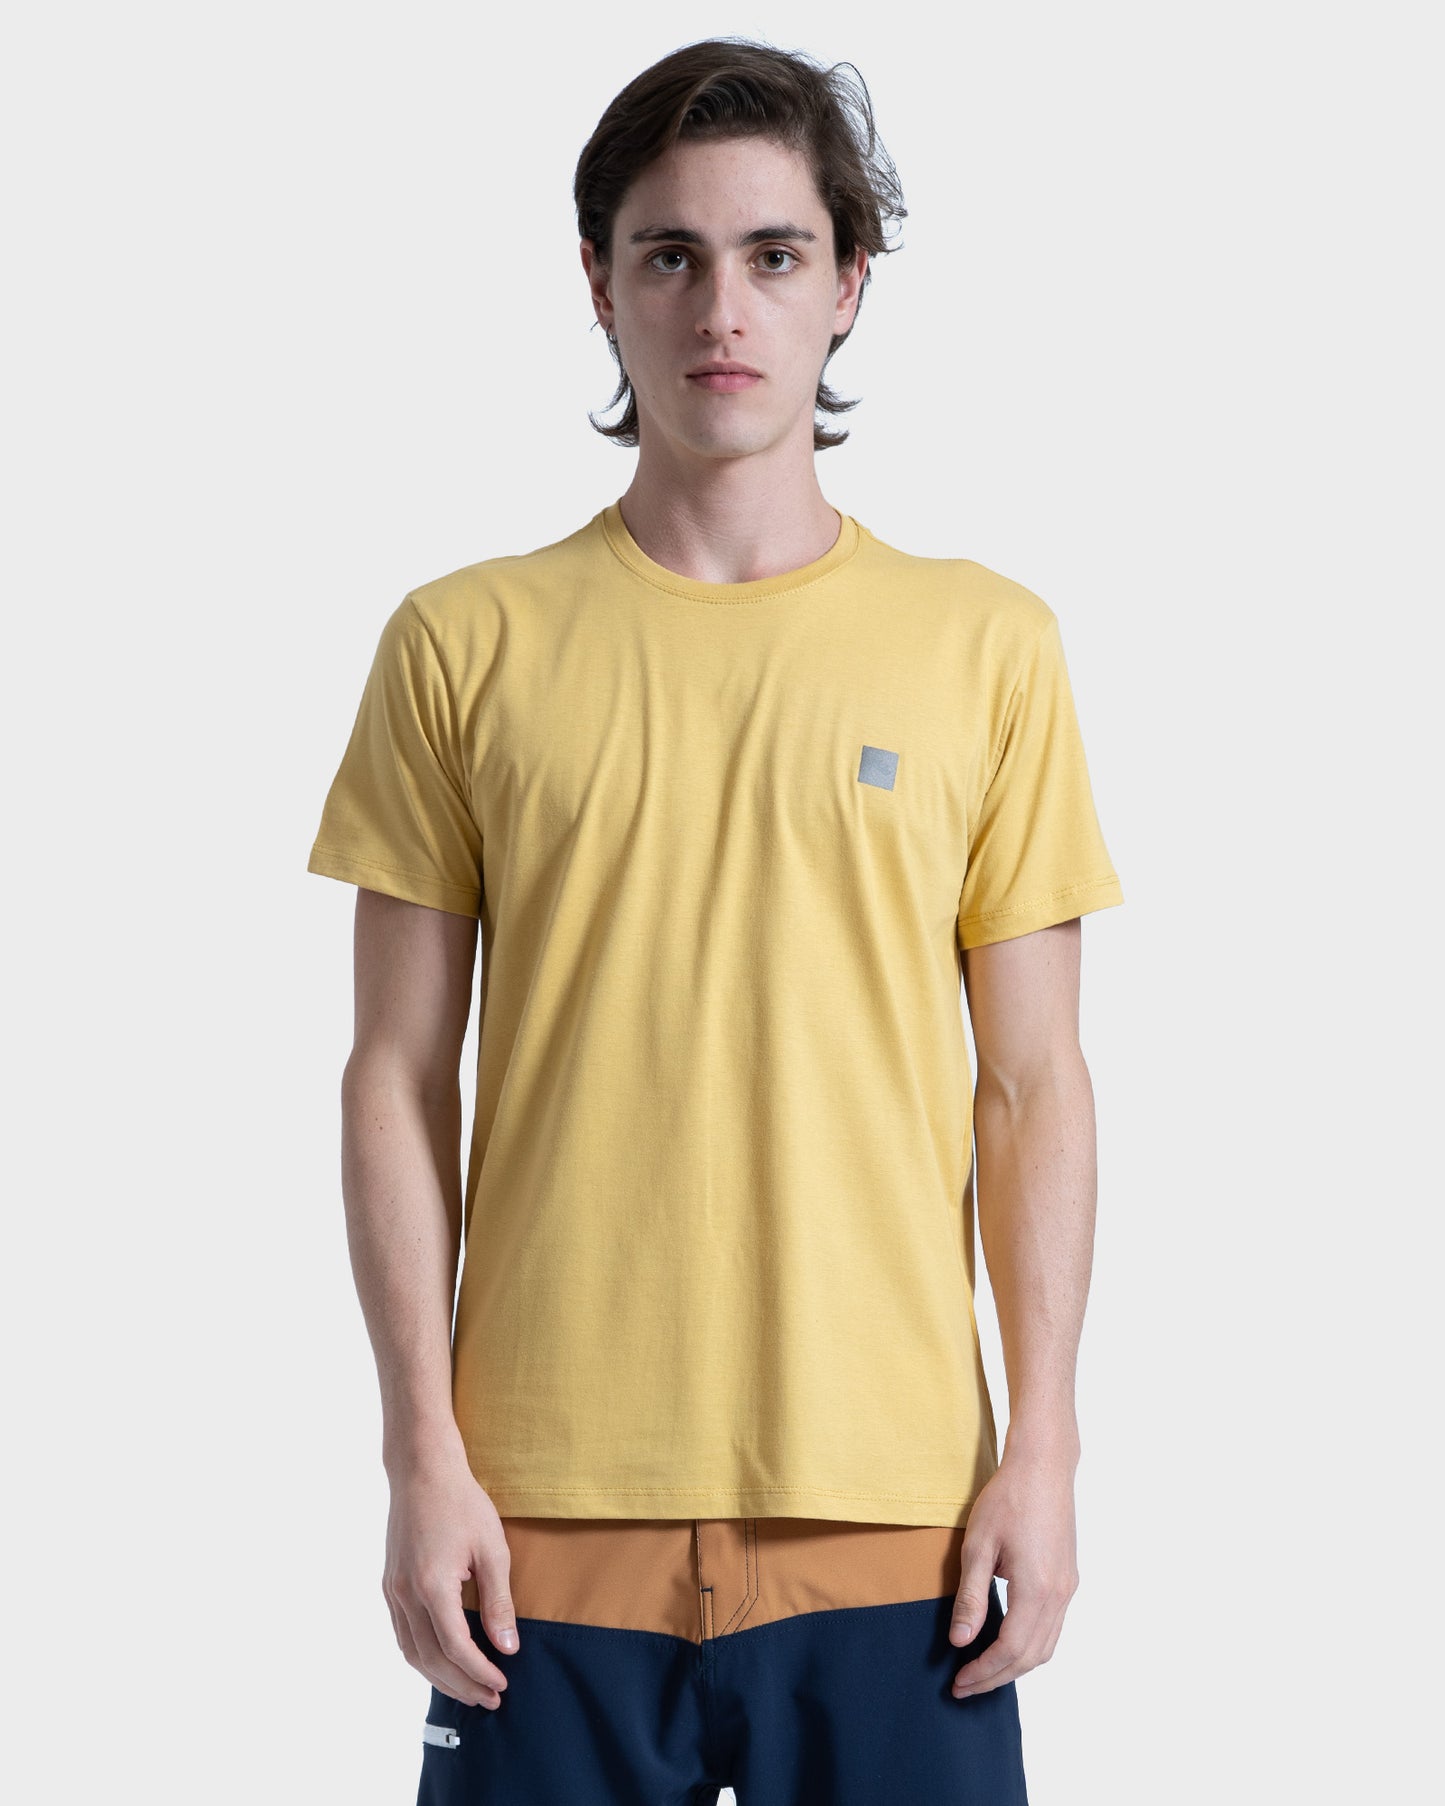 Camiseta Rusty Silk Freeform Amarela - Compre Agora